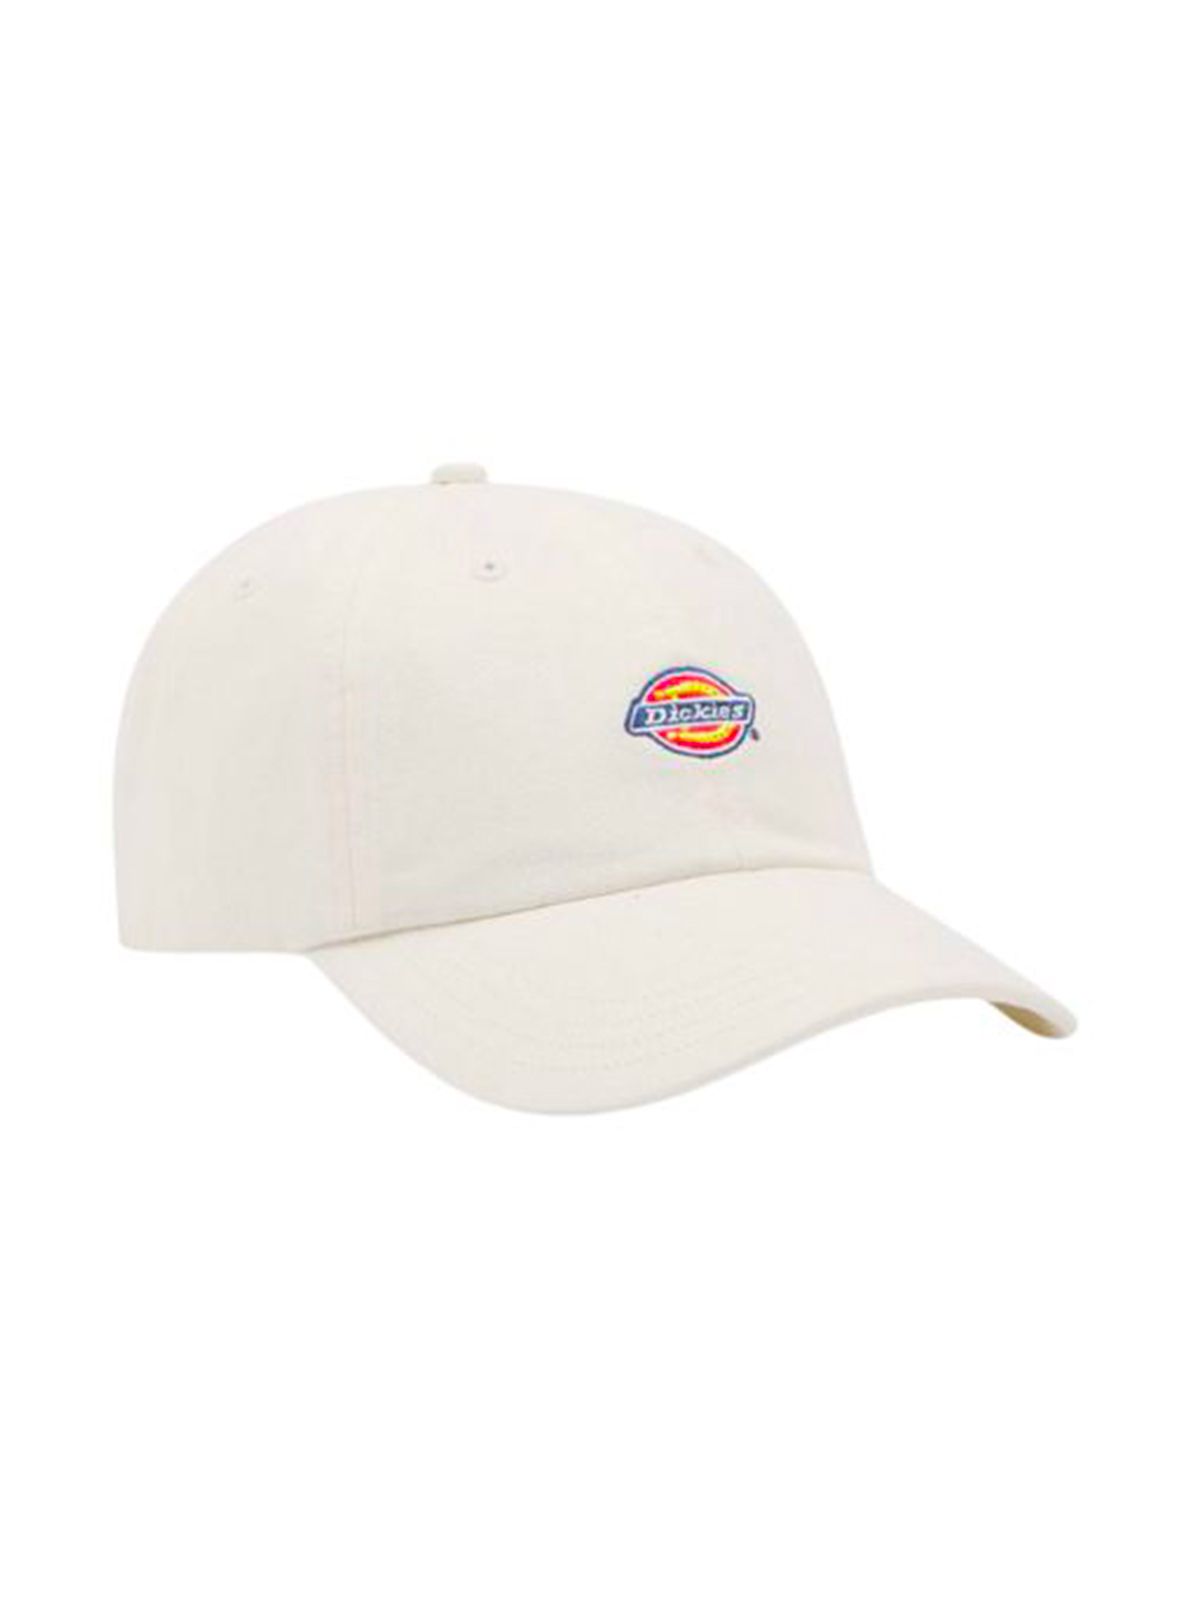 Dickies Men's Baseball Hat